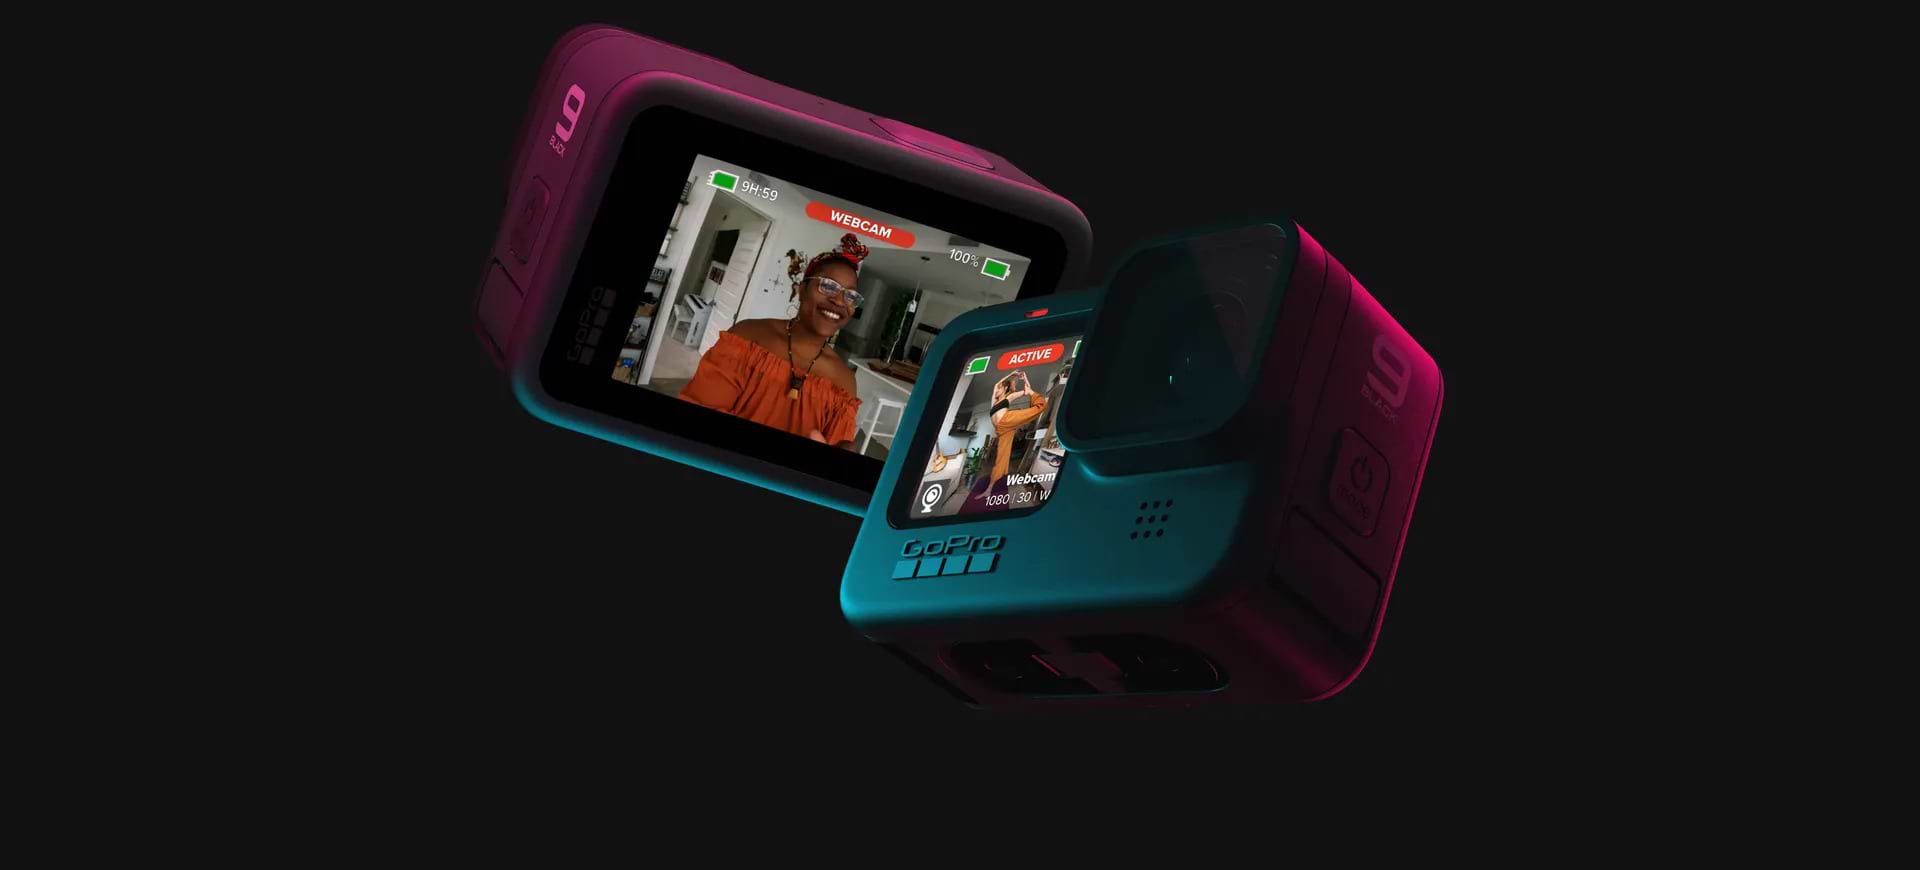 מצלמת אקסטרים GoPro Hero 9 Black - צבע שחור שנתיים אחריות ע"י היבואן הרשמי